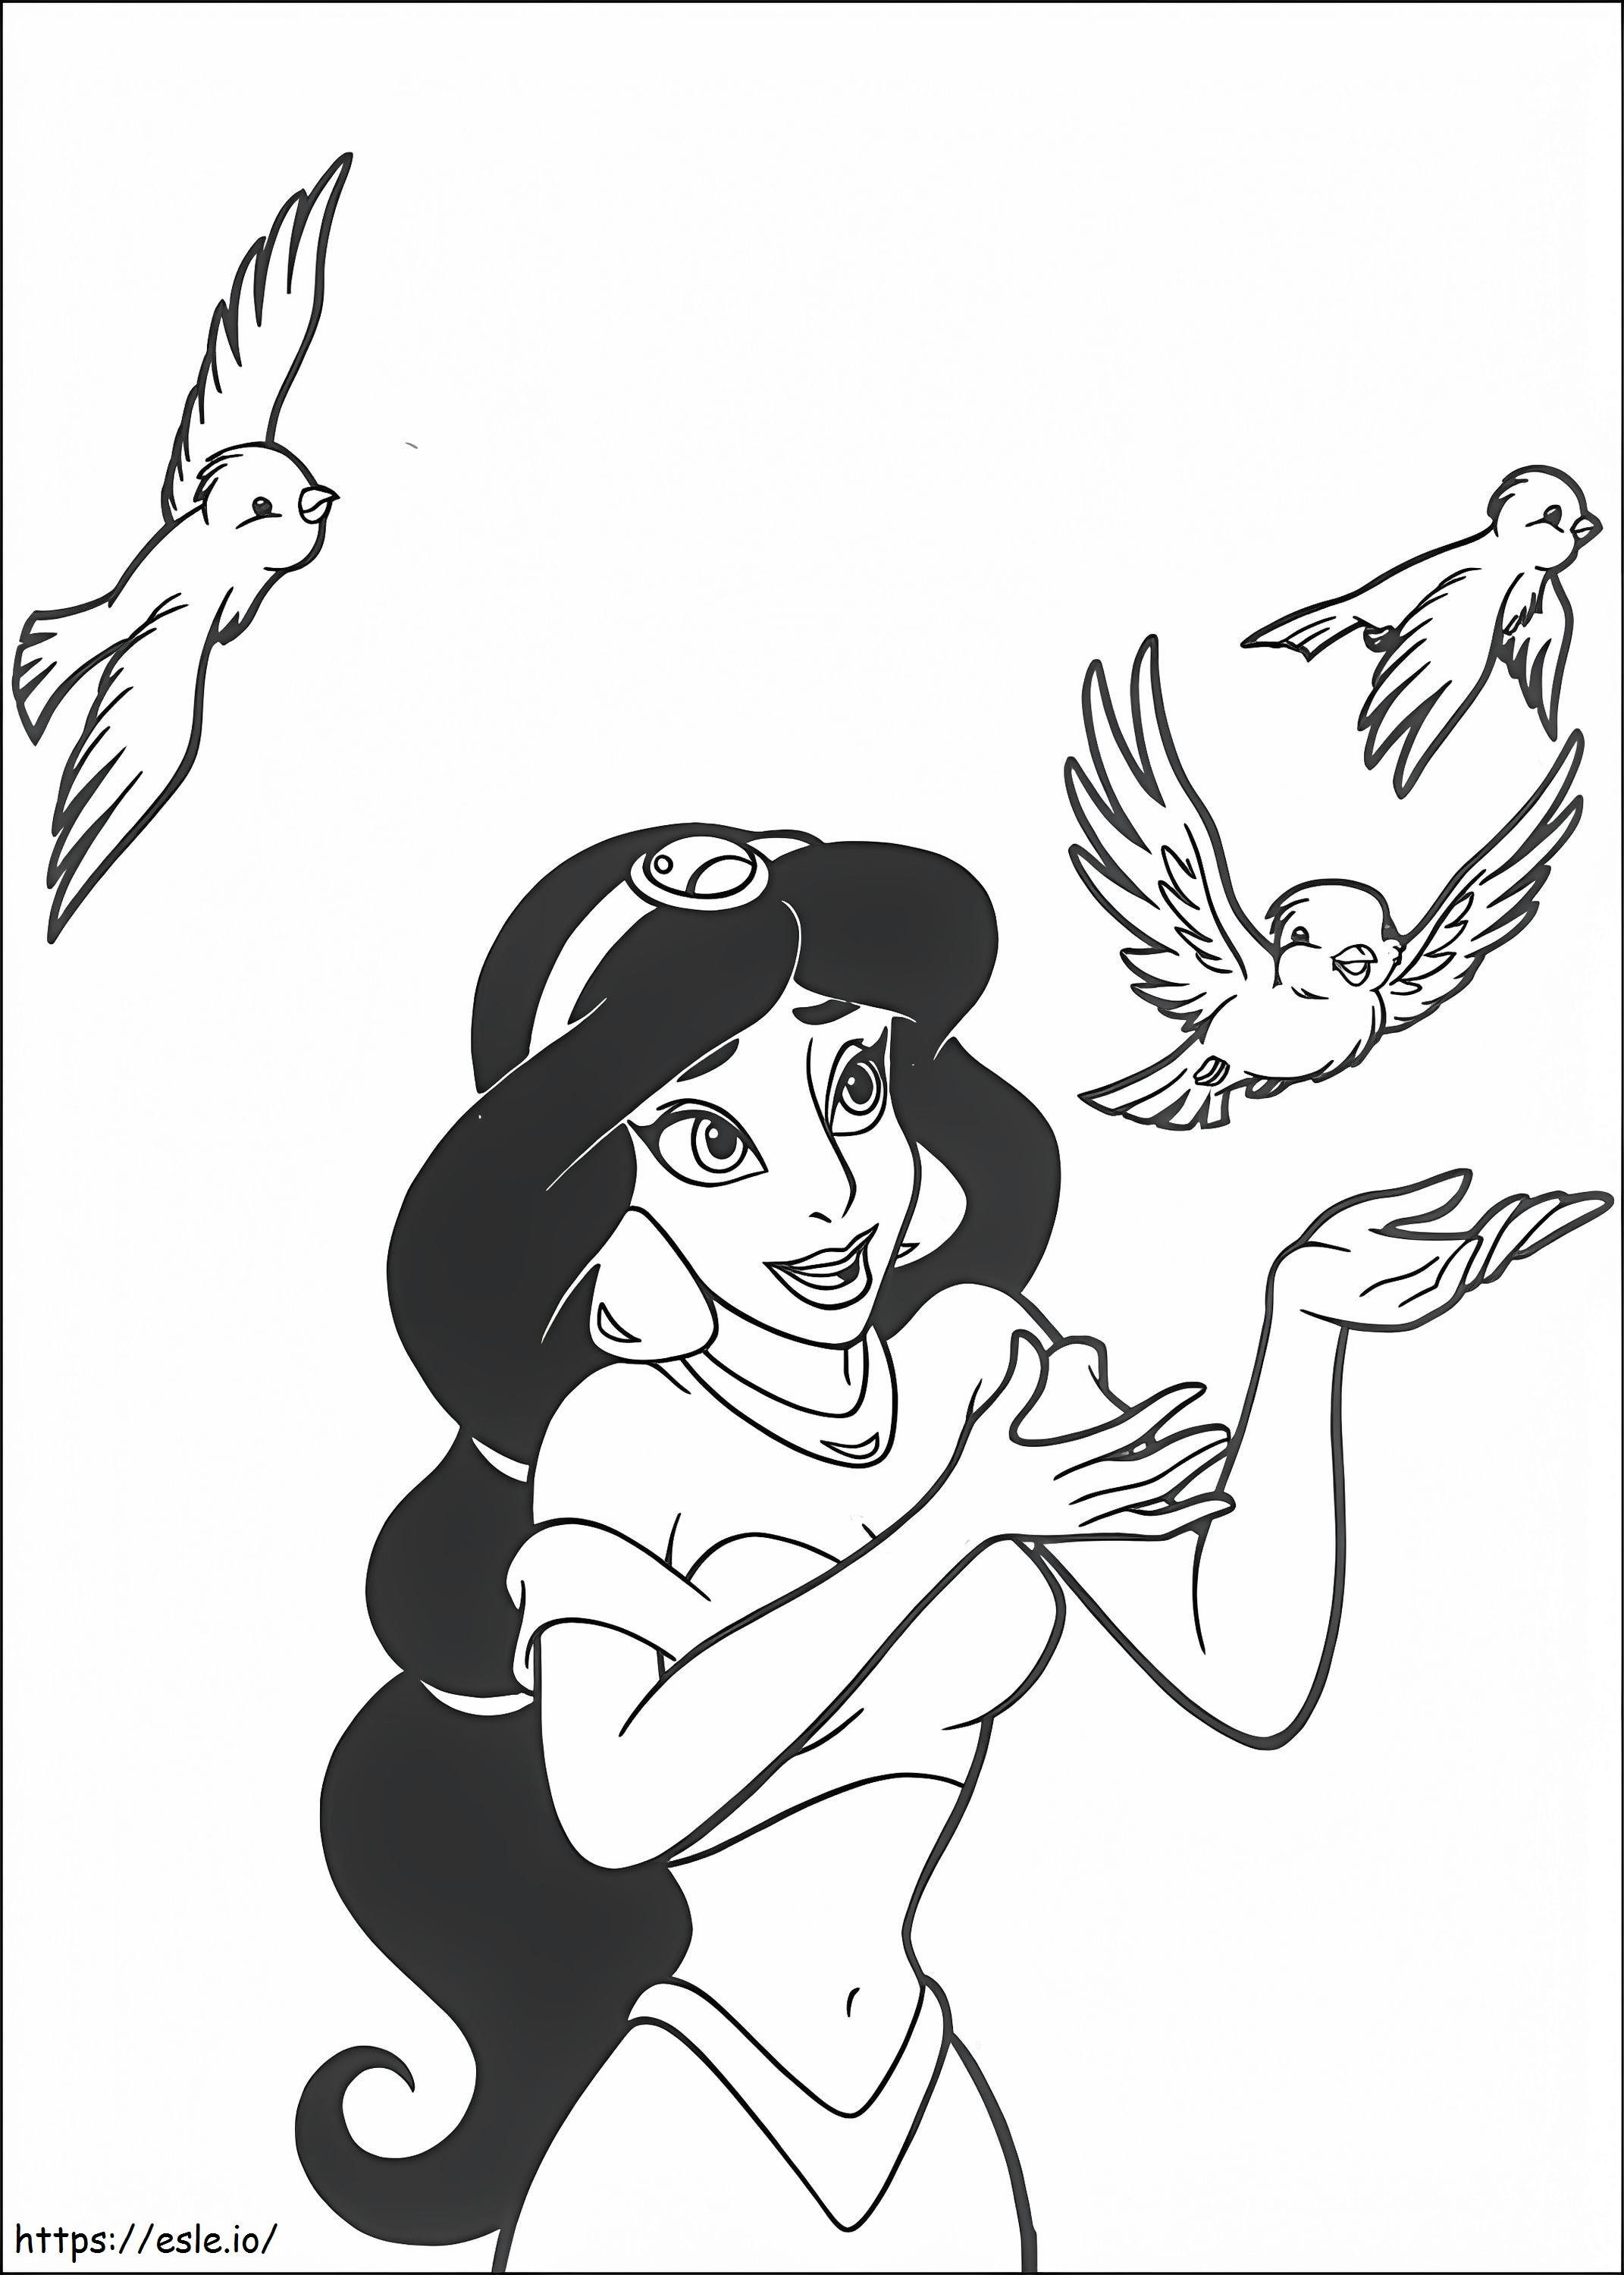  Jasmine brincando com pássaros A4 para colorir